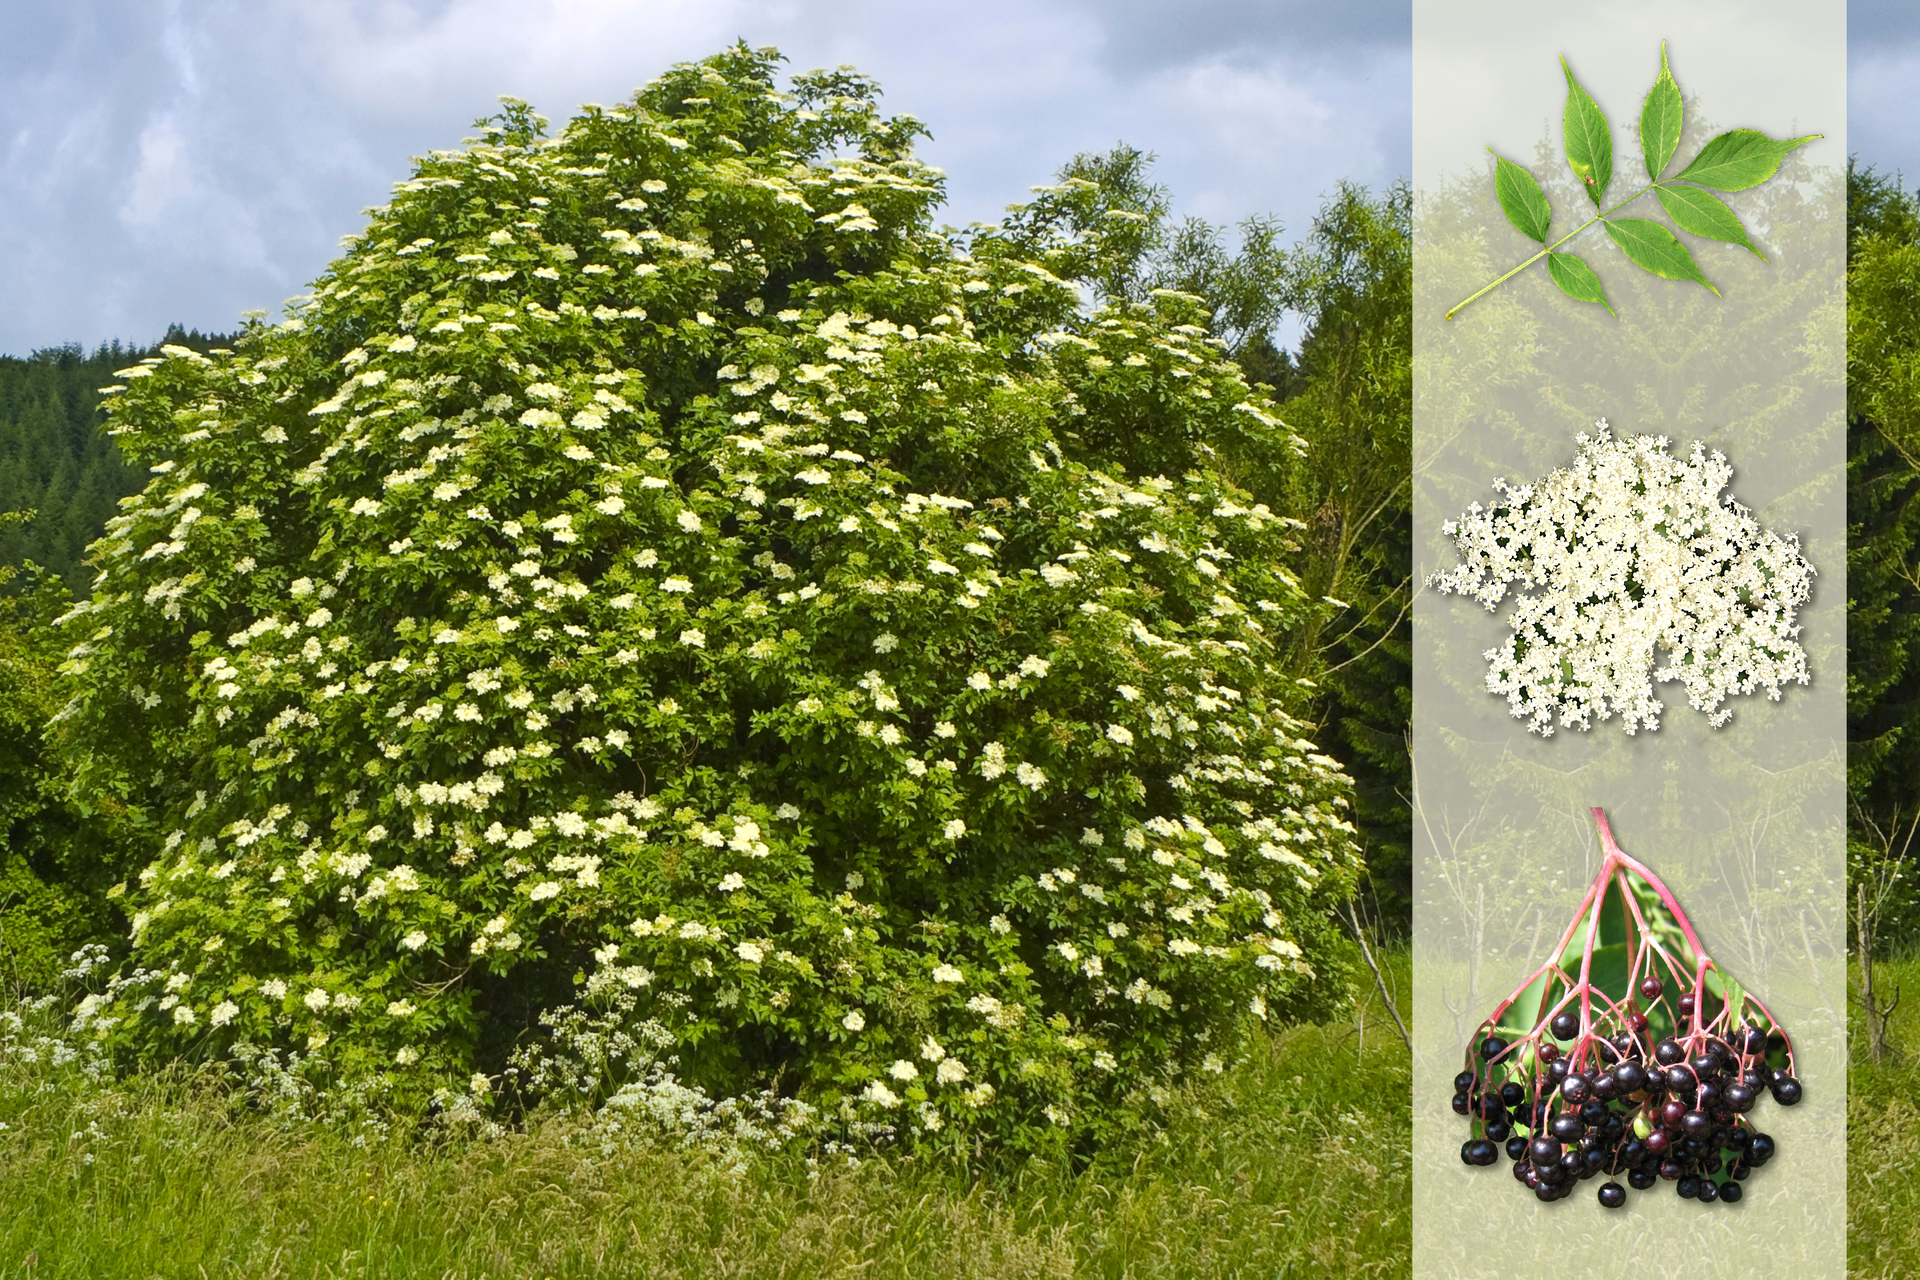 Fotografia przedstawia biało kwitnący krzew bzu czarnego na łące. Z prawej strony nałożony jaśniejszy pasek z fotografiami. U góry pierzasto złożony liść. W środku baldachowaty kwiatostan z białymi kwiatami. U dołu gałązka z czarnymi owocami.